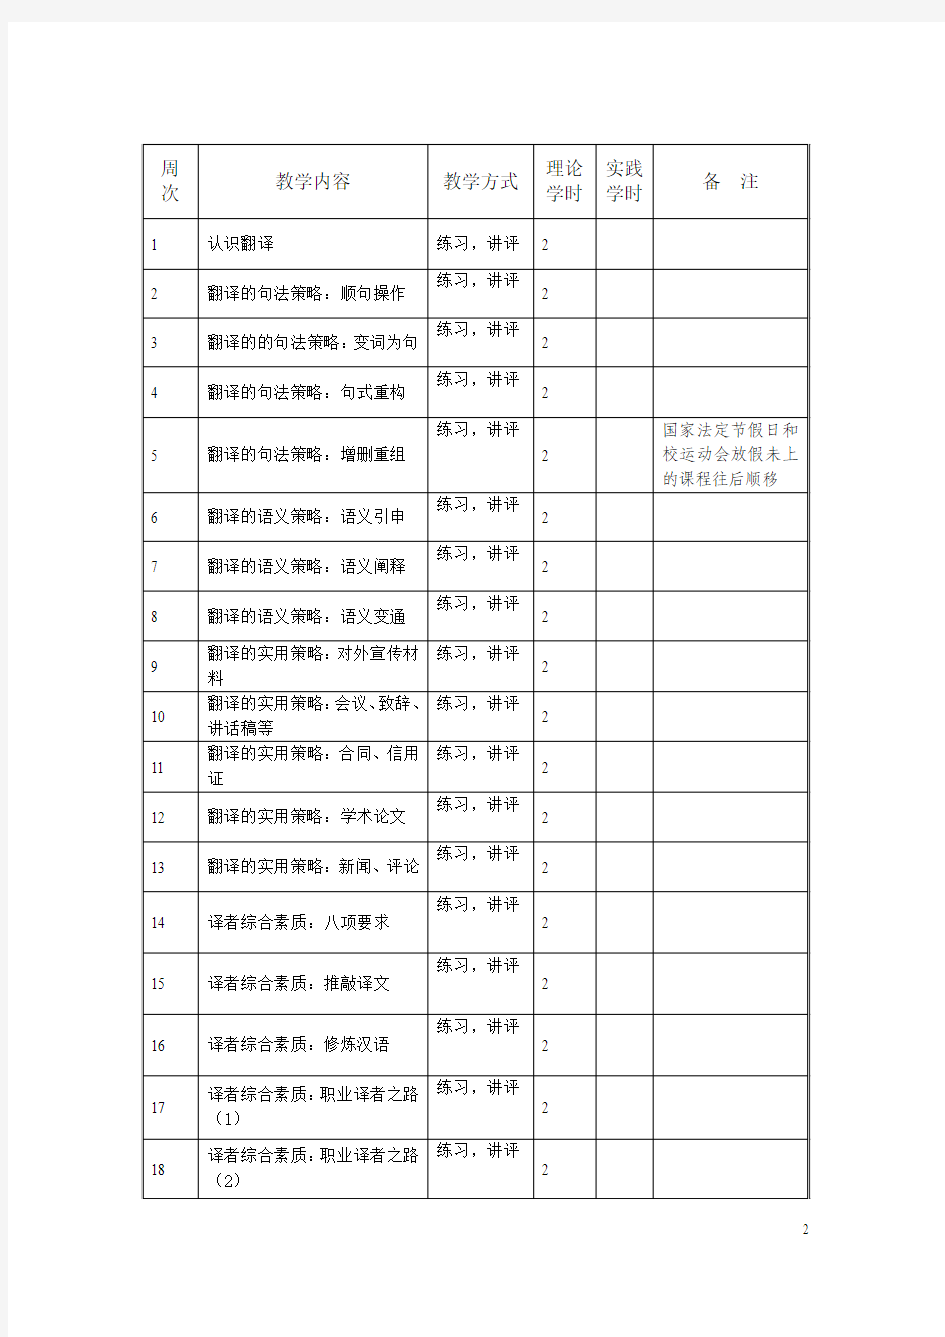 2013-2014-1学期英汉翻译大纲及教学日历 2